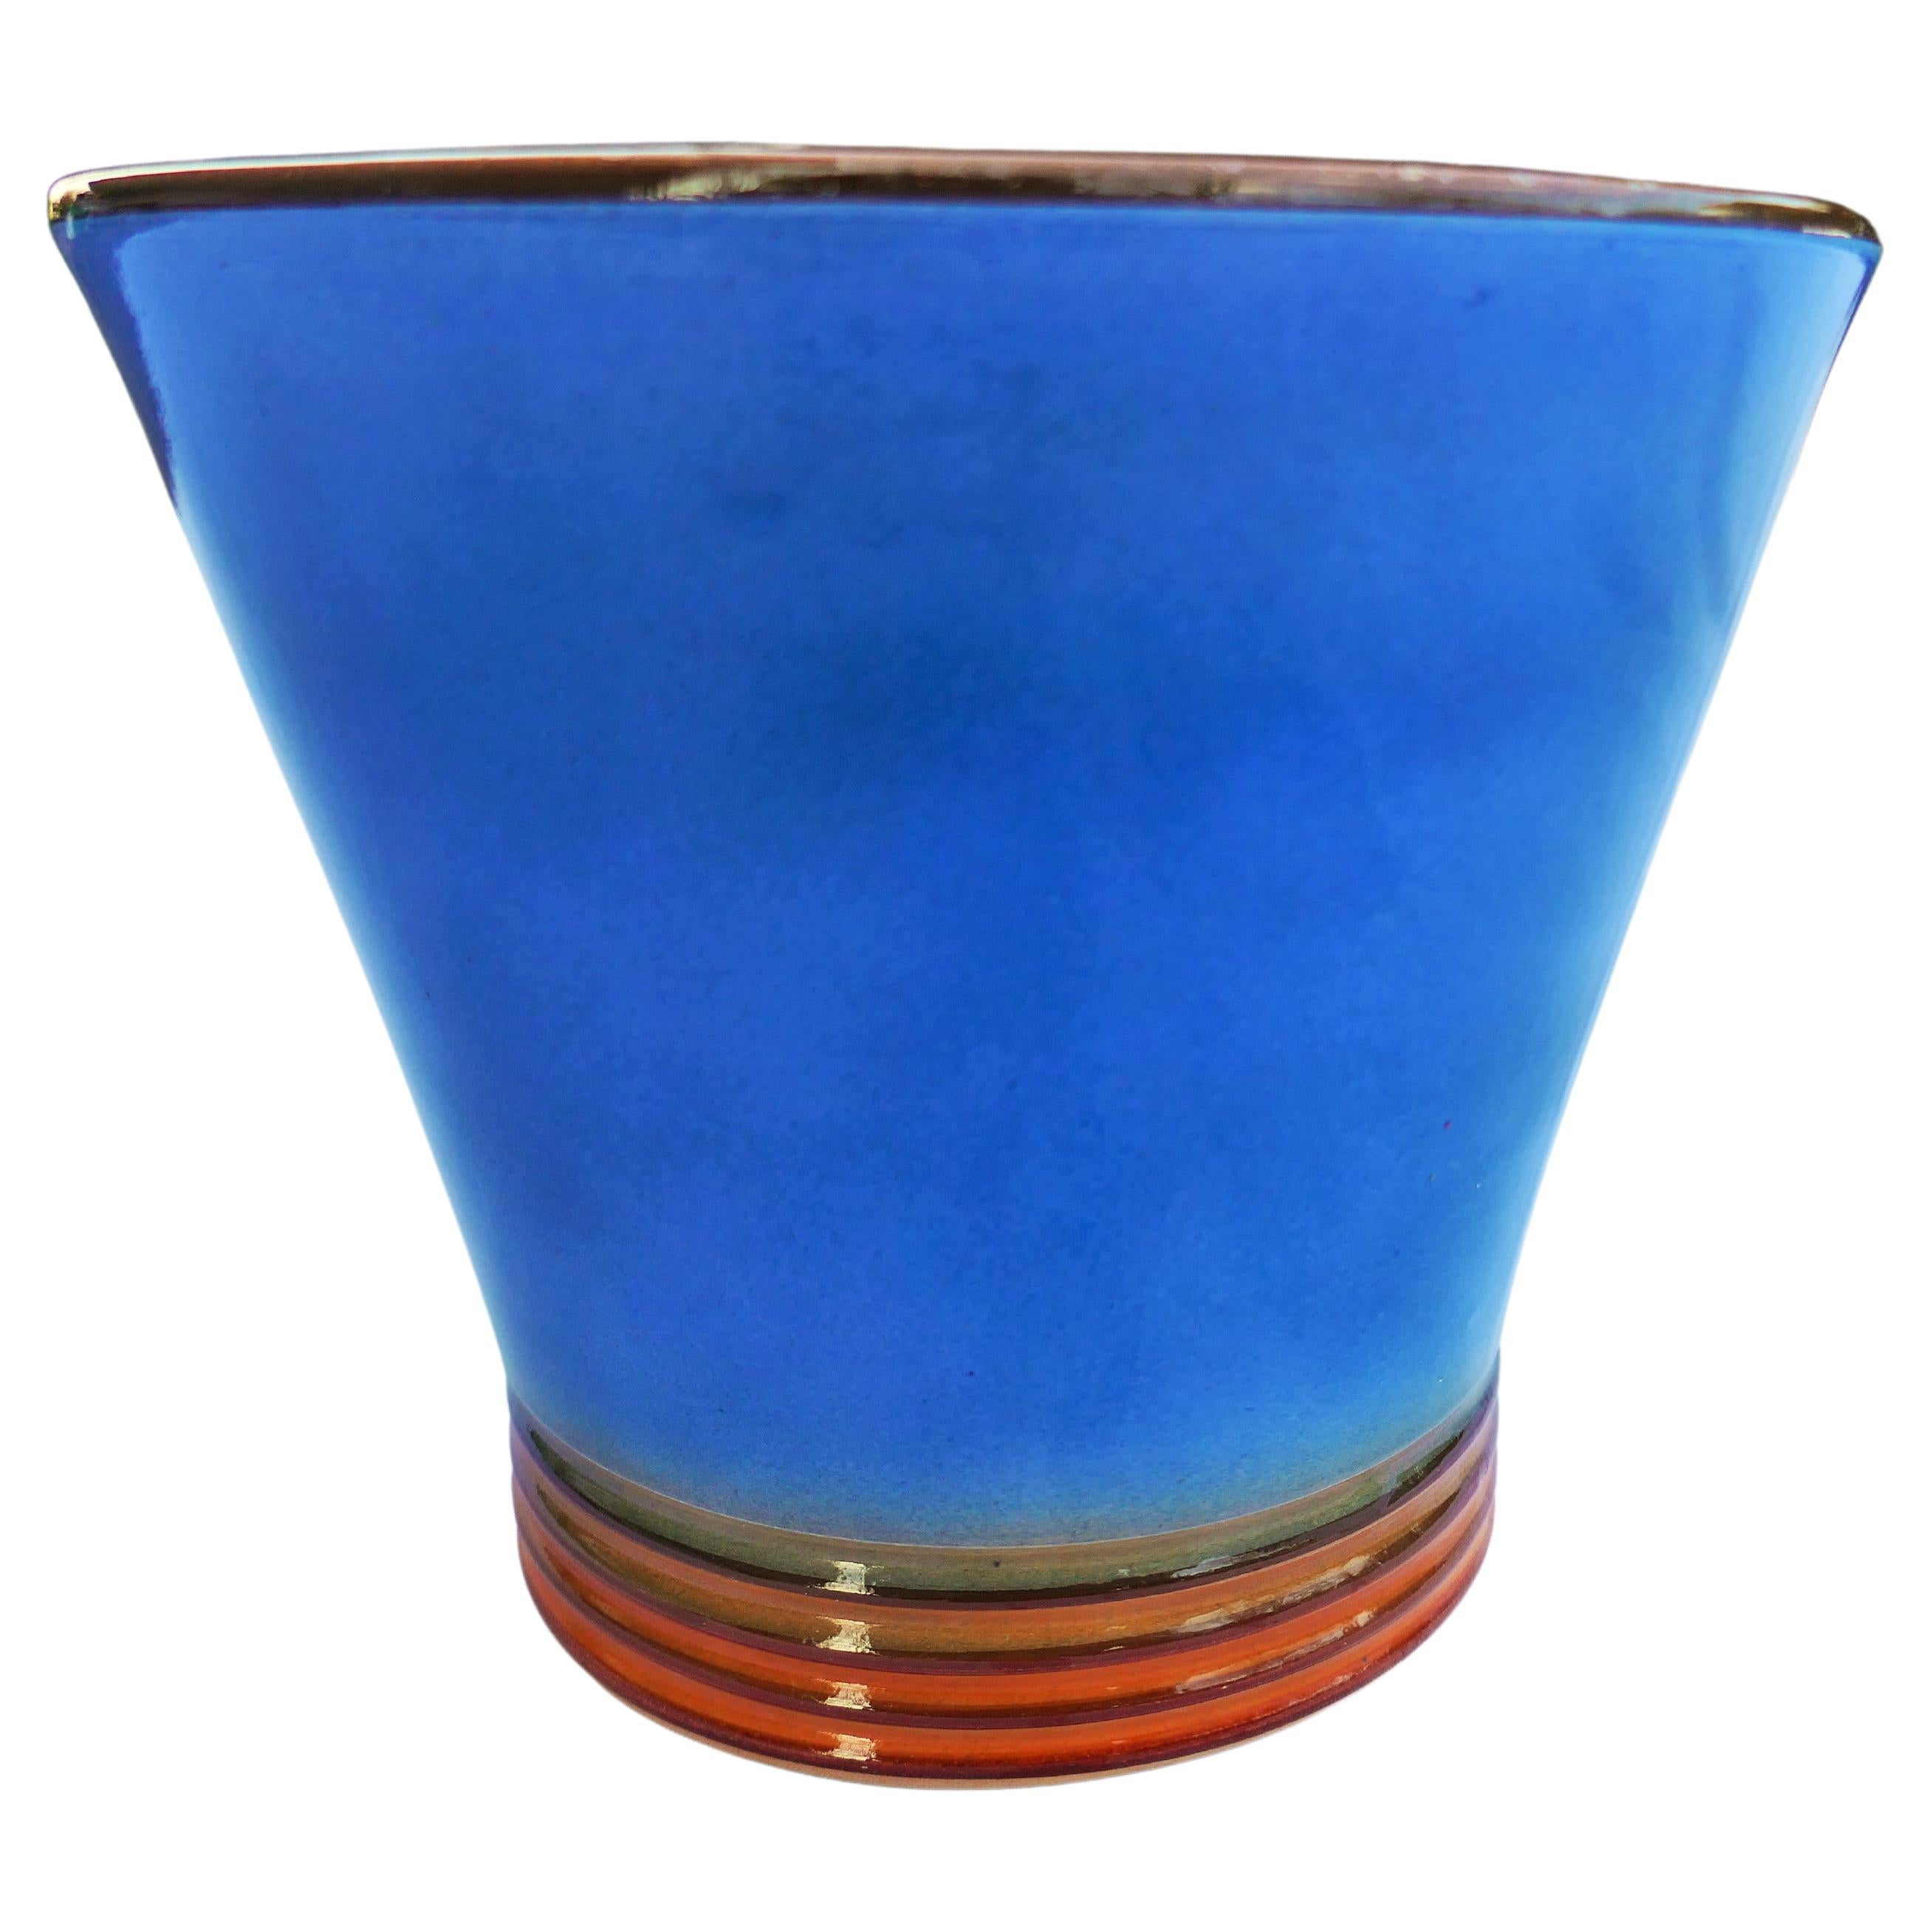 Vase en céramique possiblement produit par Galvani.
Bon état
Merci de votre attention